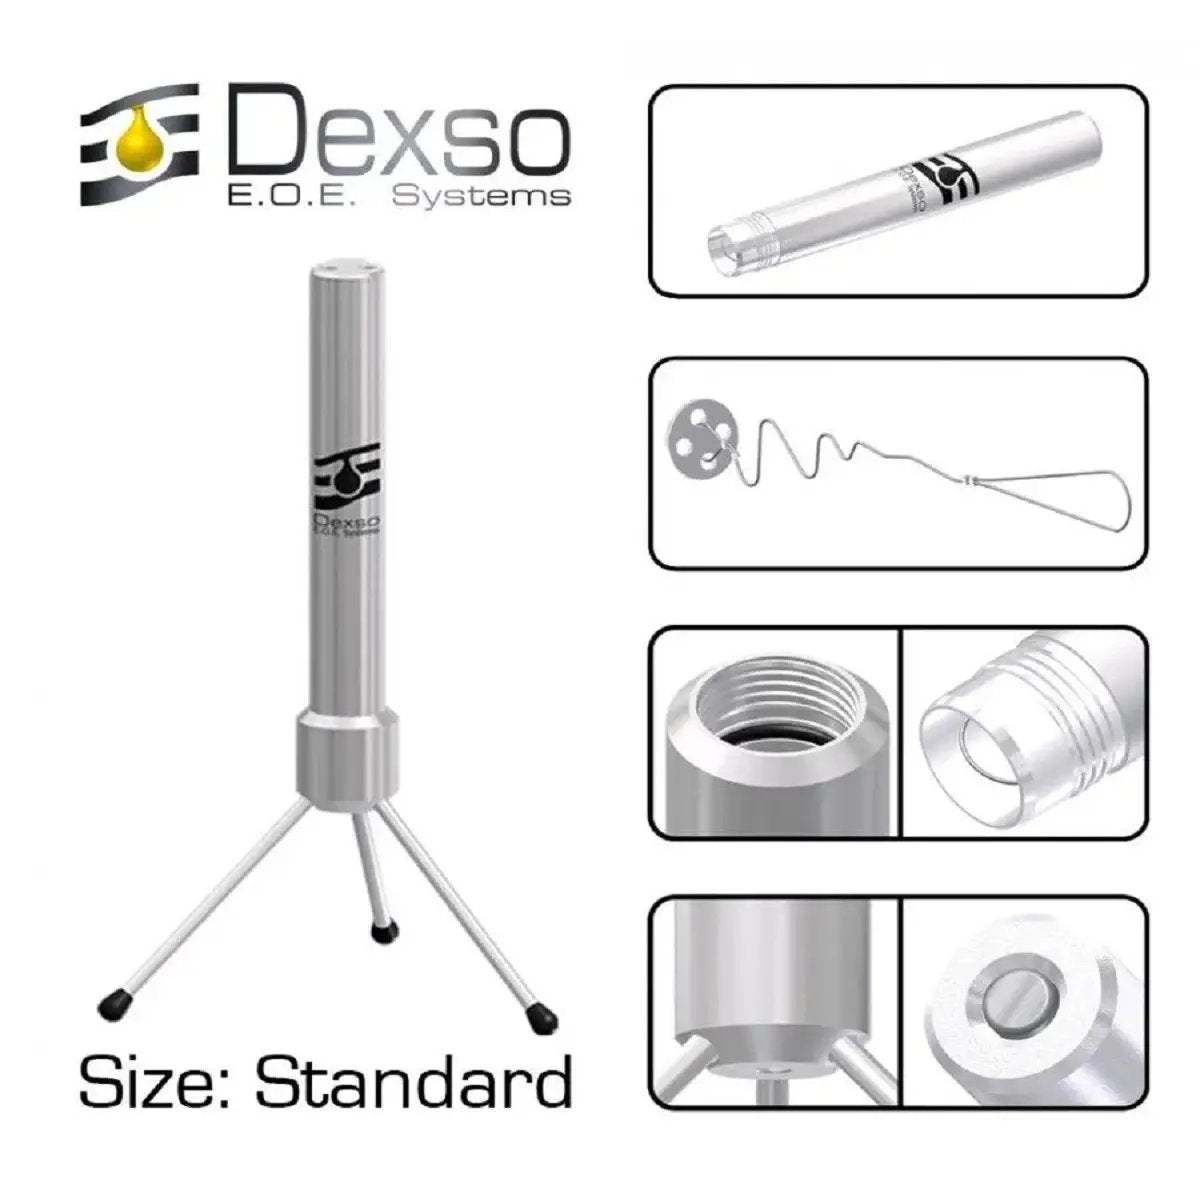 Dexso EOE - Extractor Standard